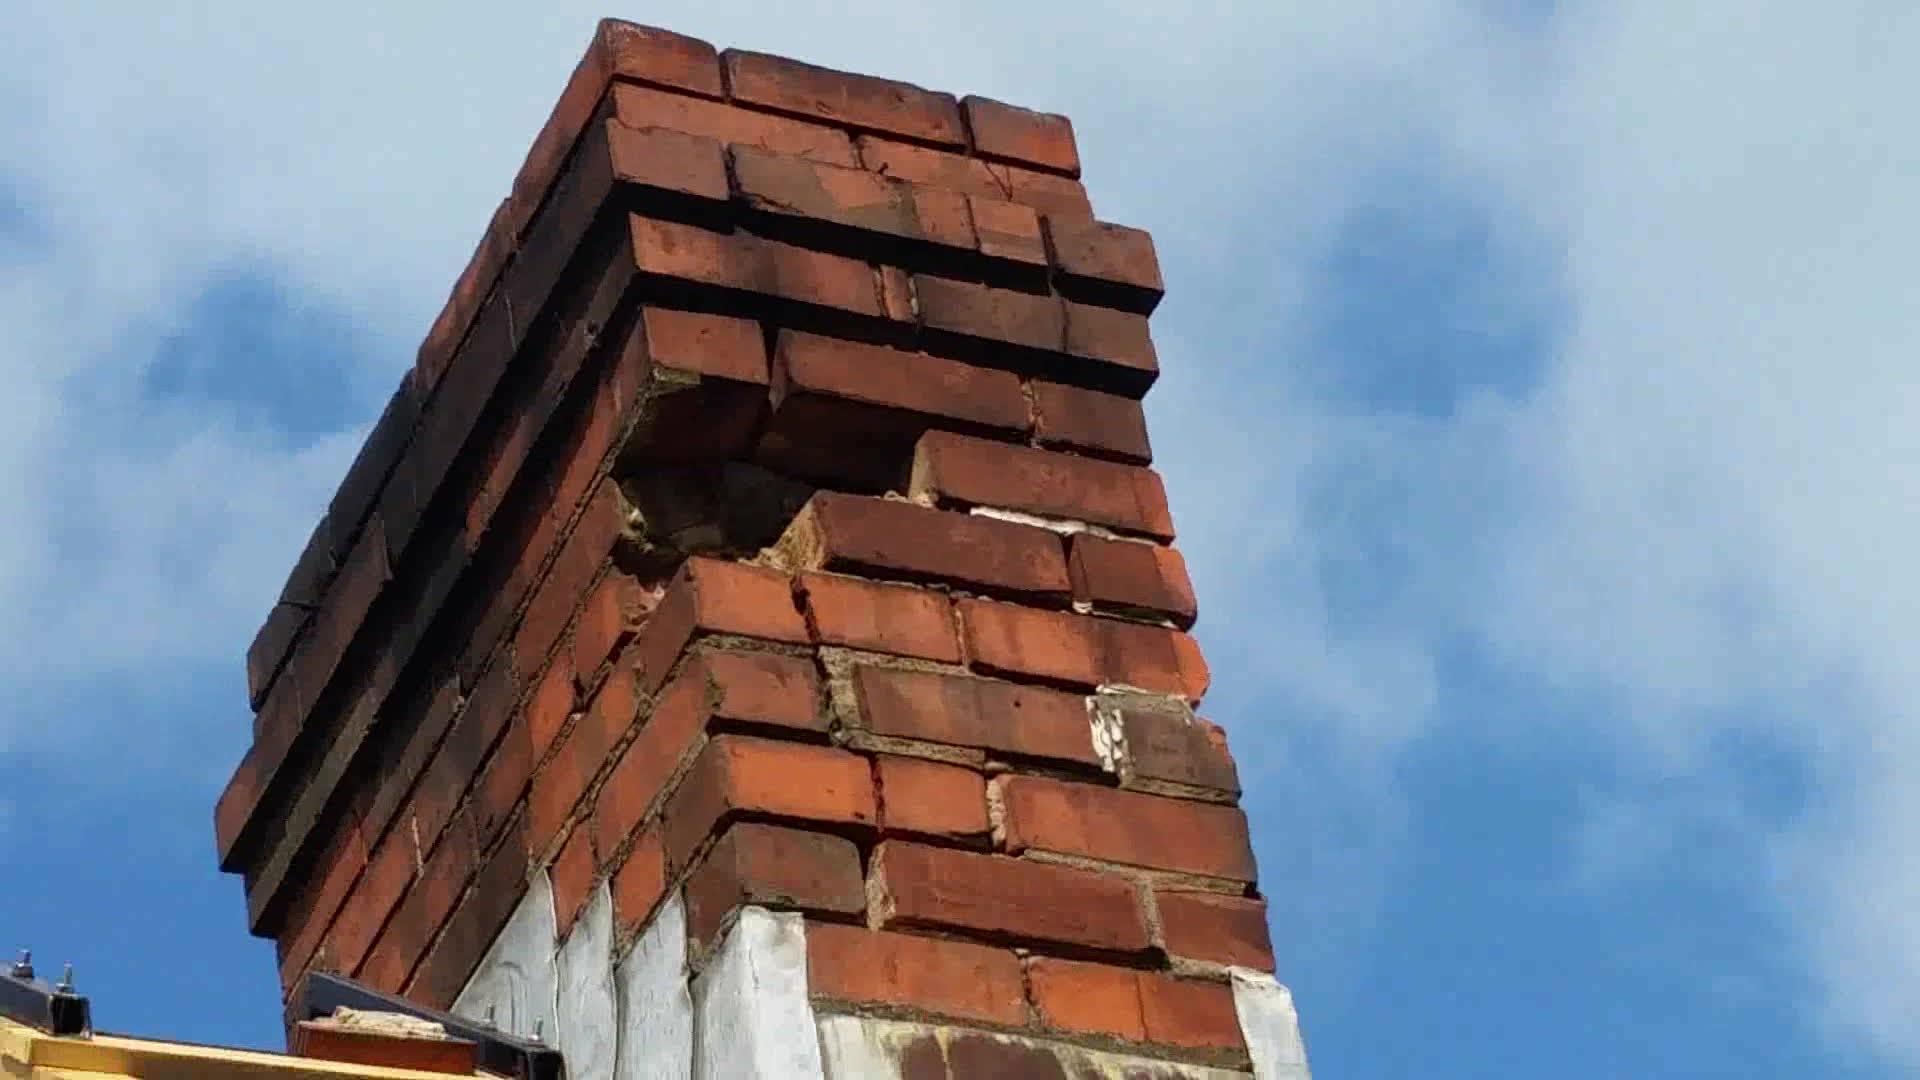 Brick repair on chimney DIY - YouTube